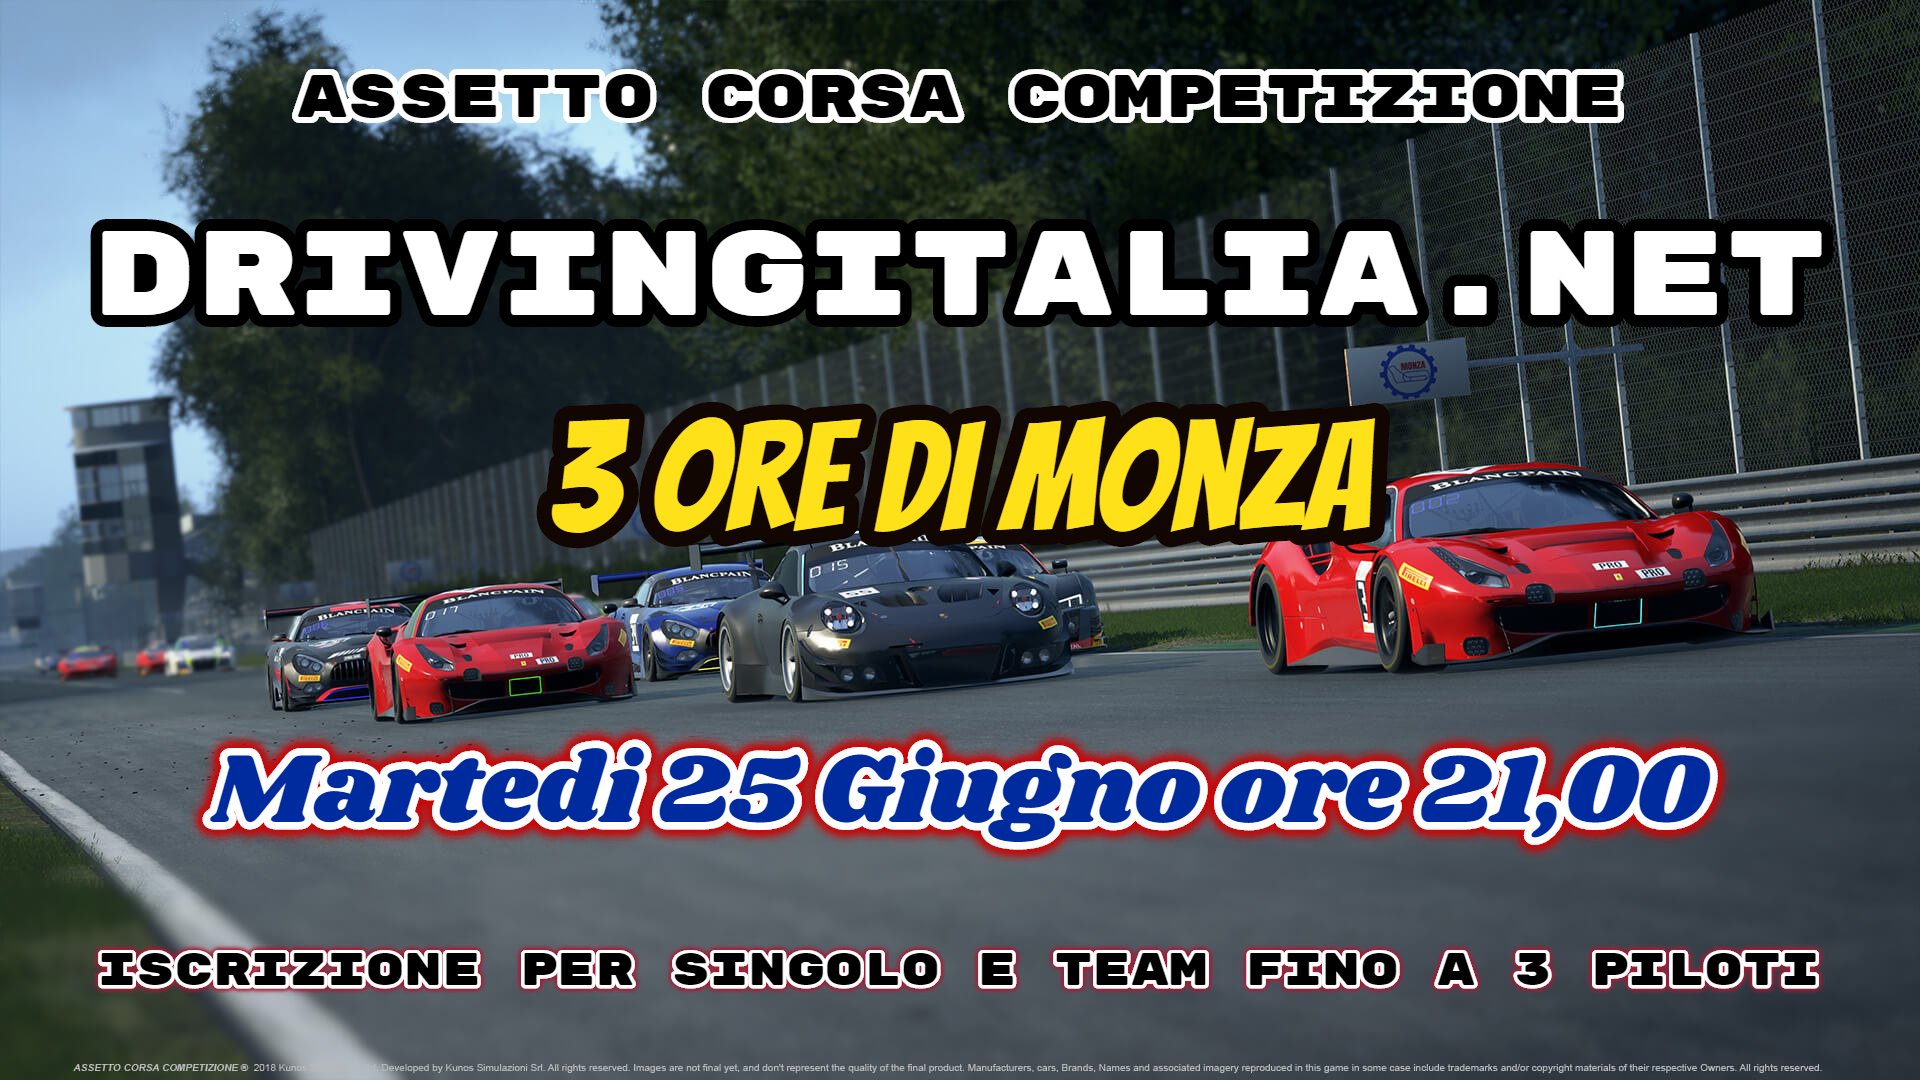 More information about "AC Competizione: DrivingItalia.NET 3 Ore di MONZA - 25 Giugno"